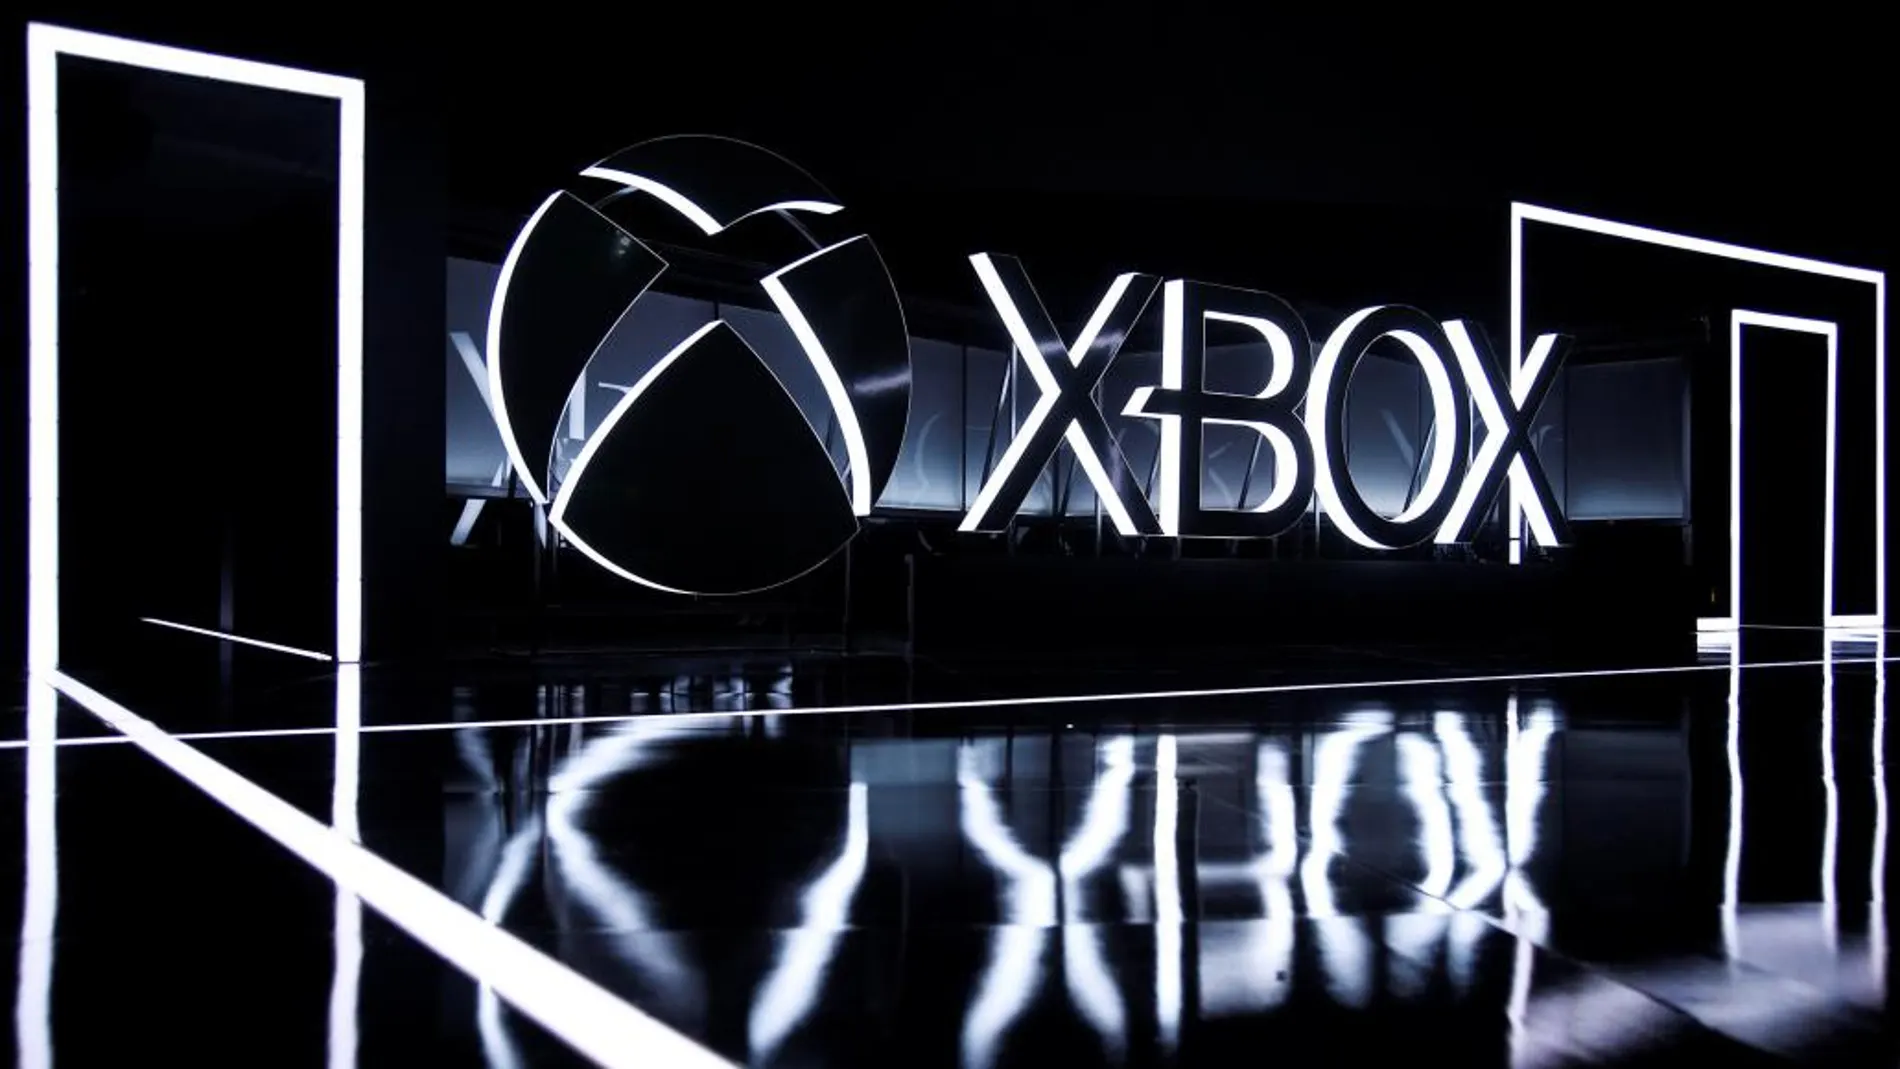 La consola Xbox, durante una presentación el pasado mes de junio